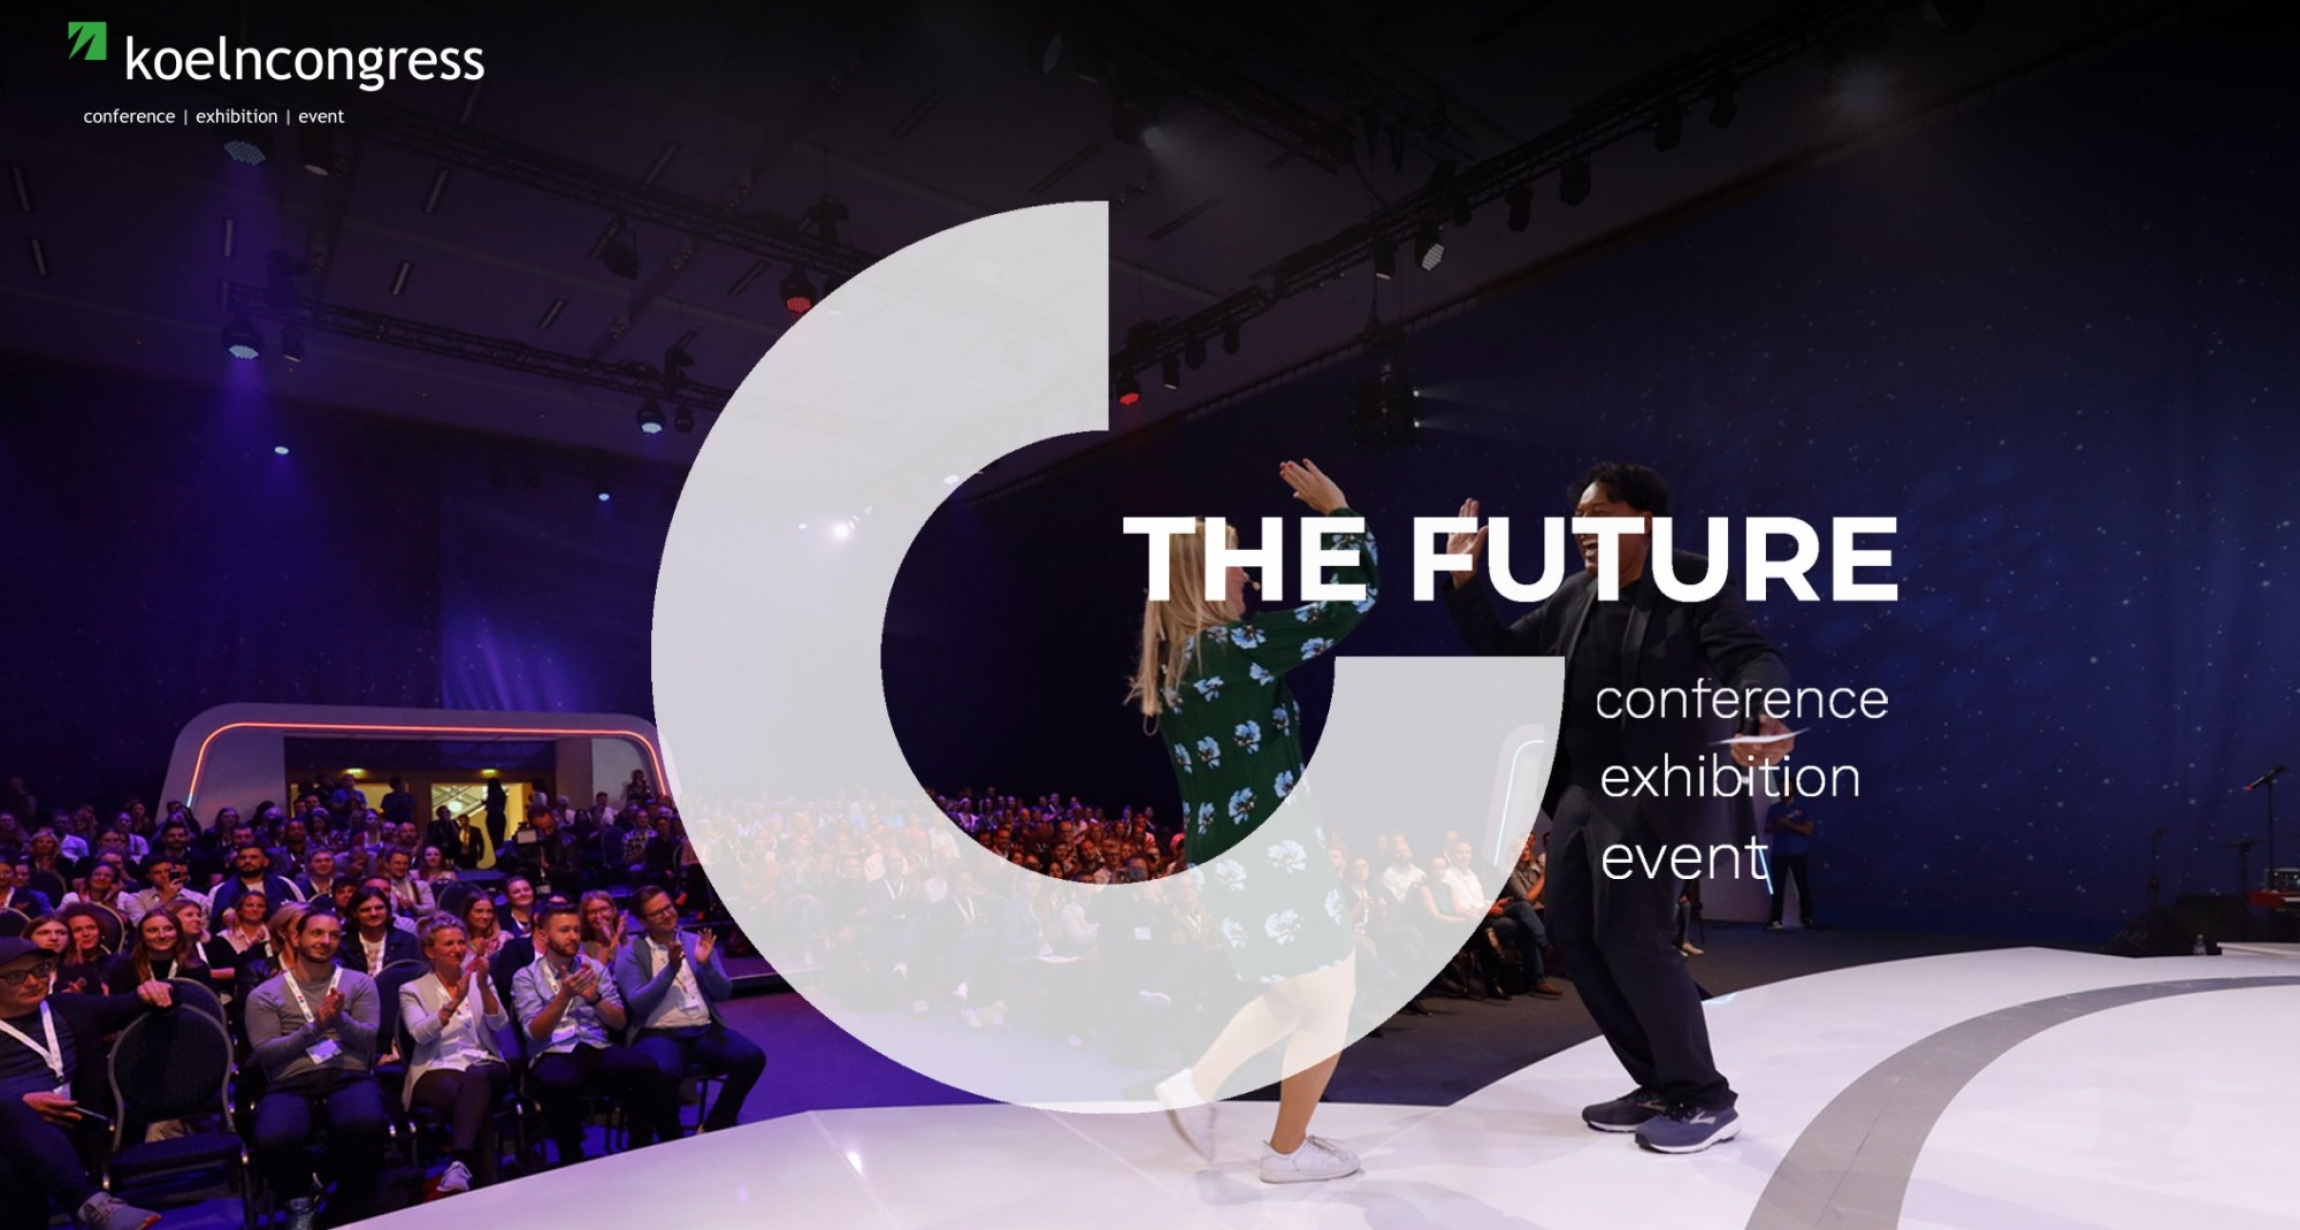 Il nuovo Koelncongress - conferenze, fiere, eventi del futuro